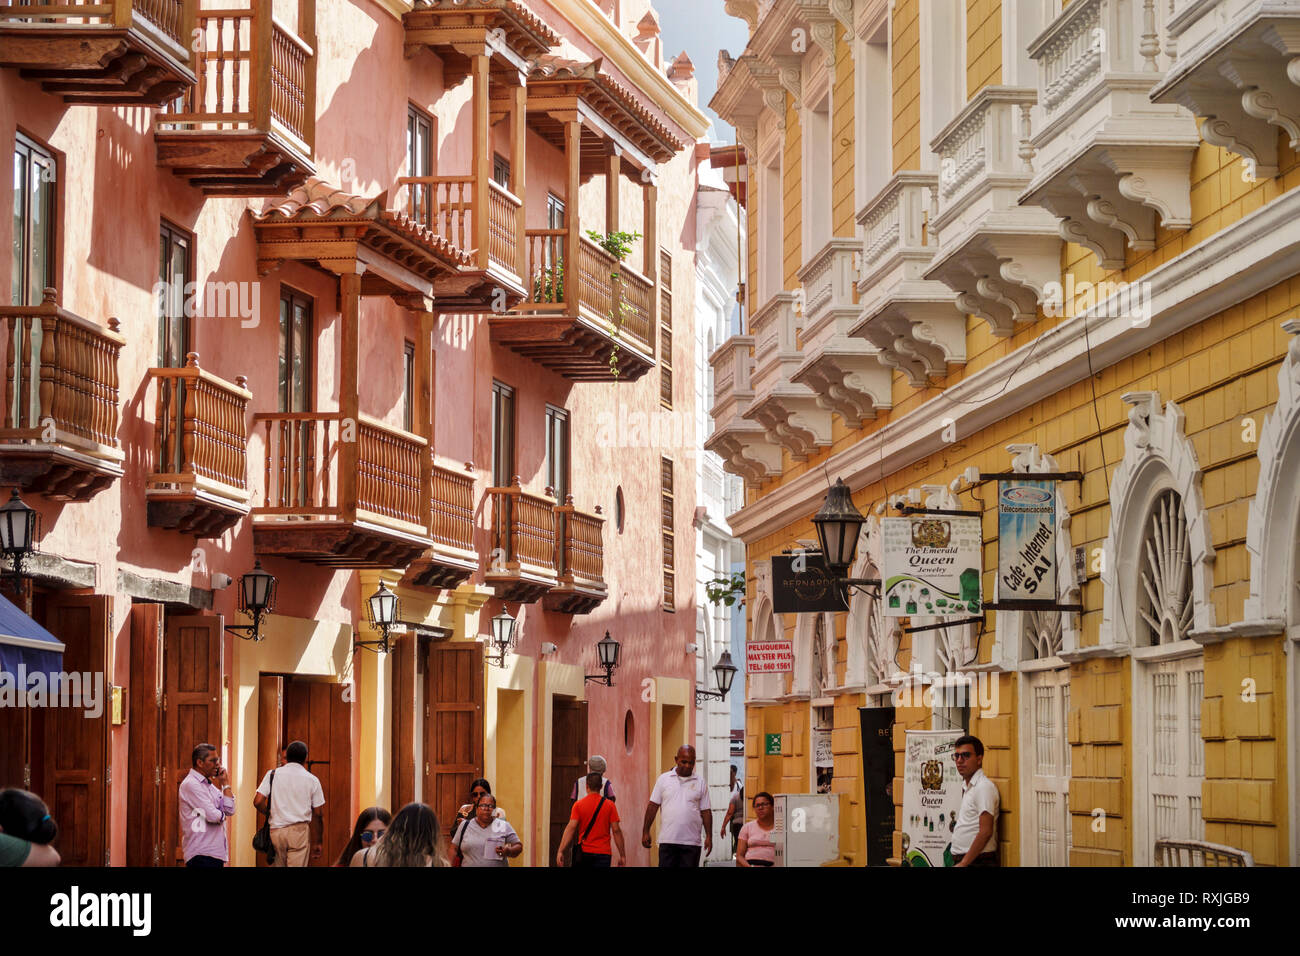 Cartagena Colombia, strada stretta, residenti ispanici, architettura coloniale, balconi in legno, facciata, pedonale, COL190119192 Foto Stock